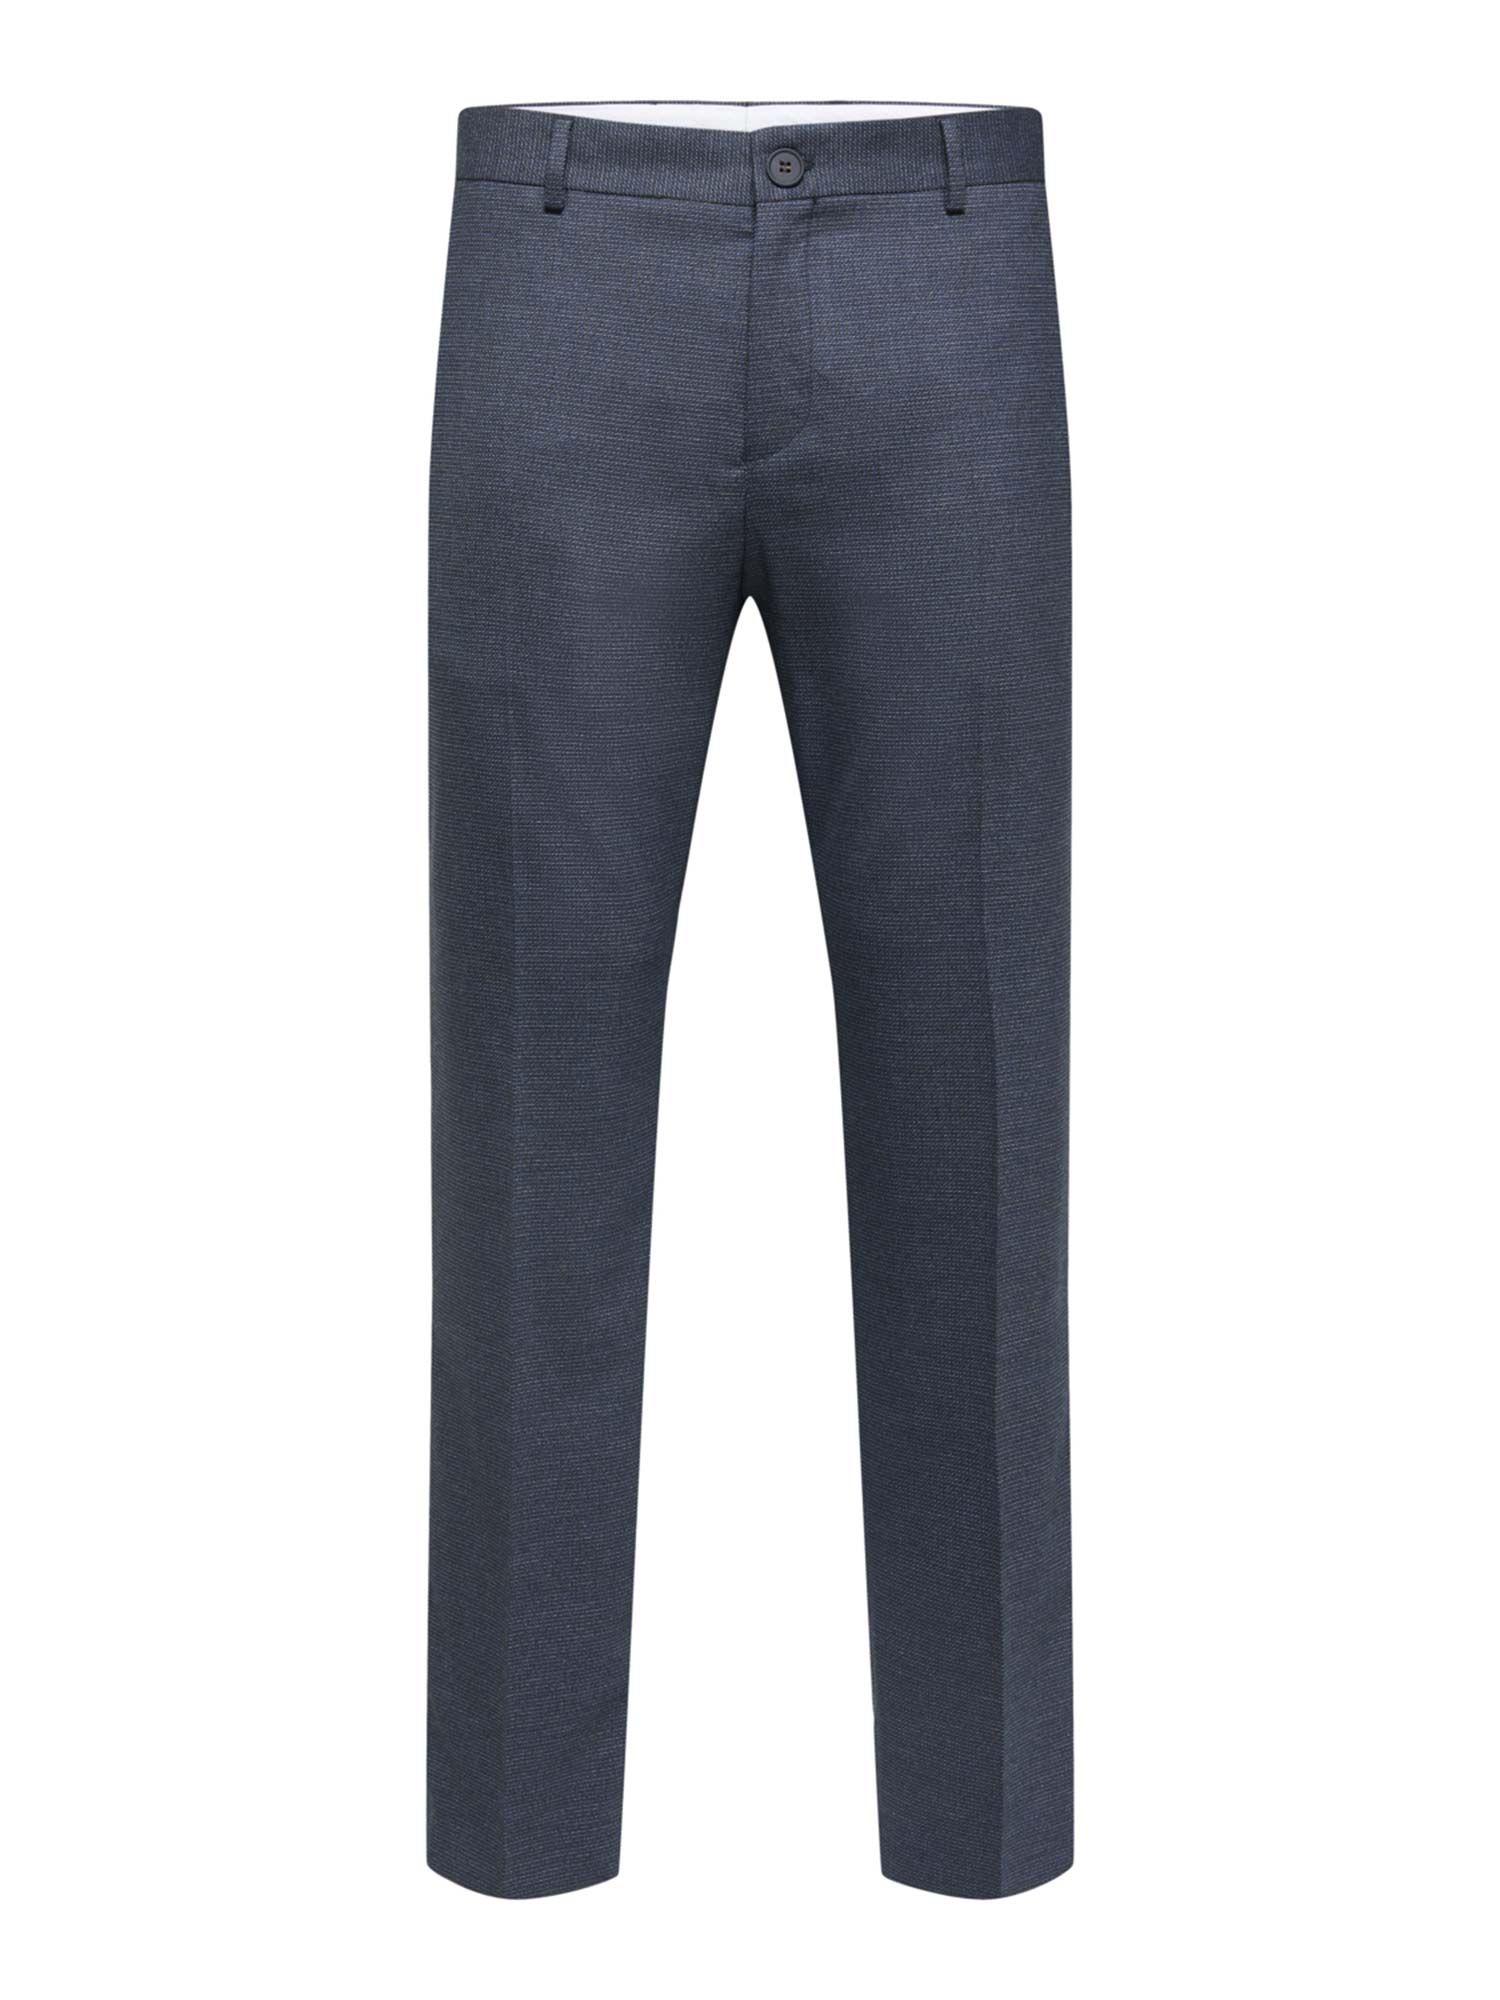 blue slim fit formal suit trousers -46